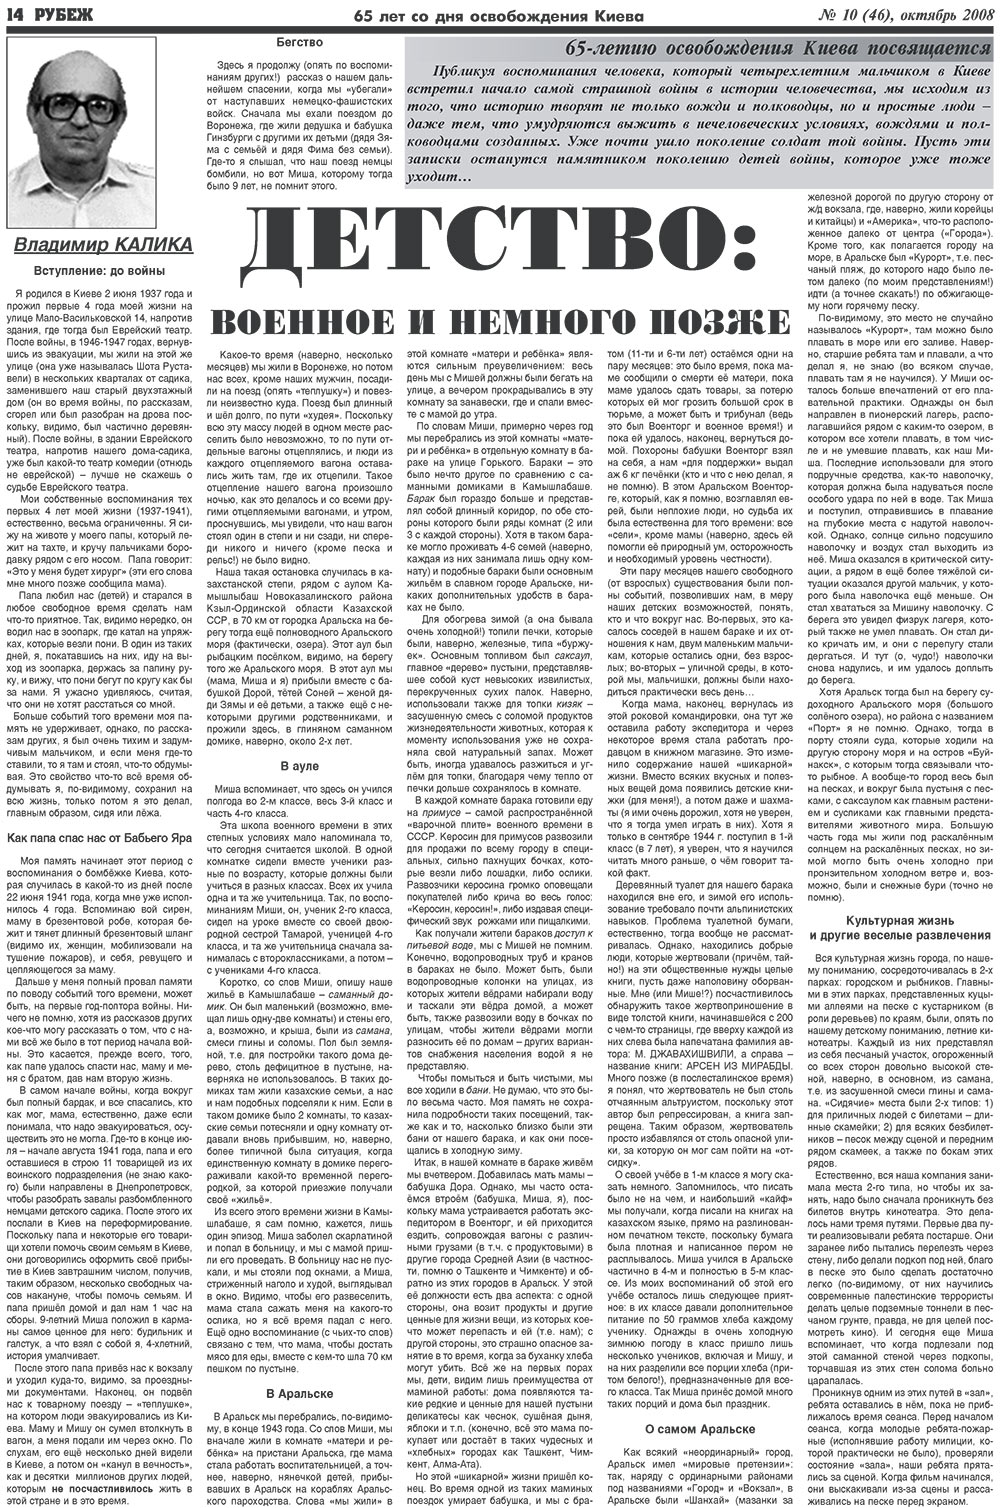 Рубеж (газета). 2008 год, номер 10, стр. 14